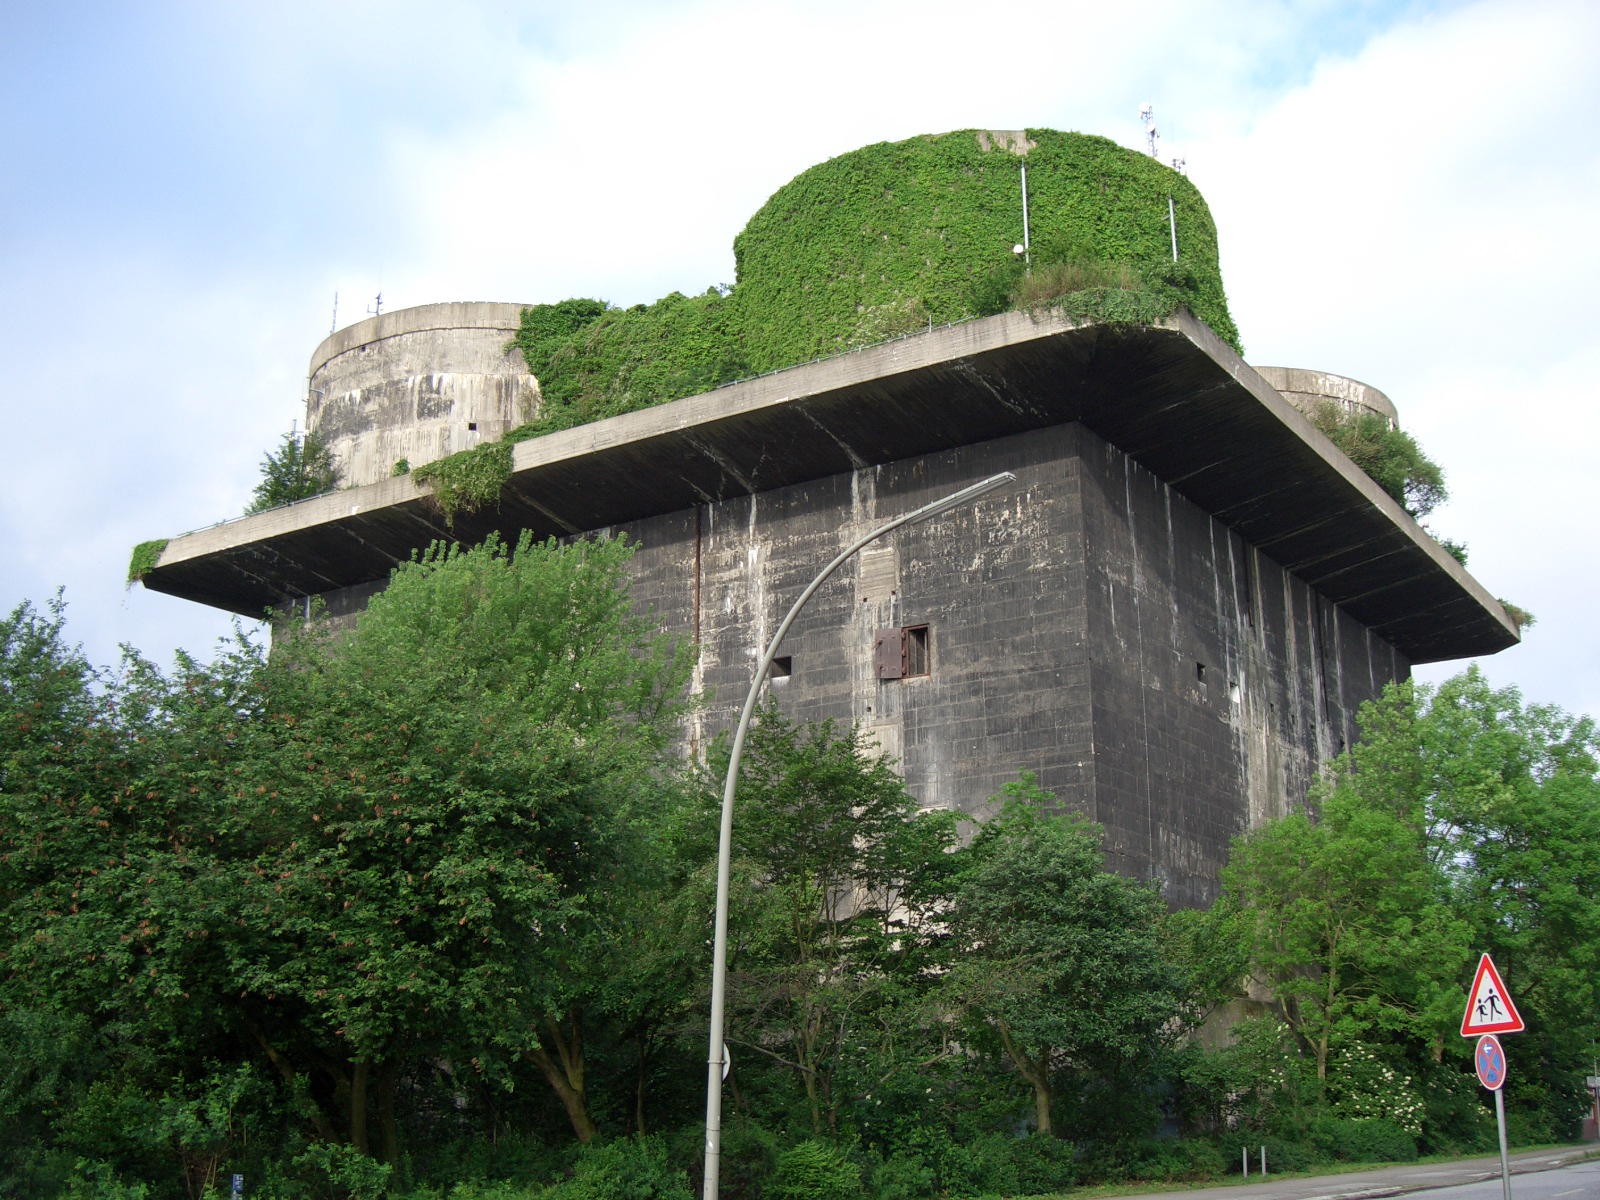 Ein Insektenhotel in Form des Bunkers.